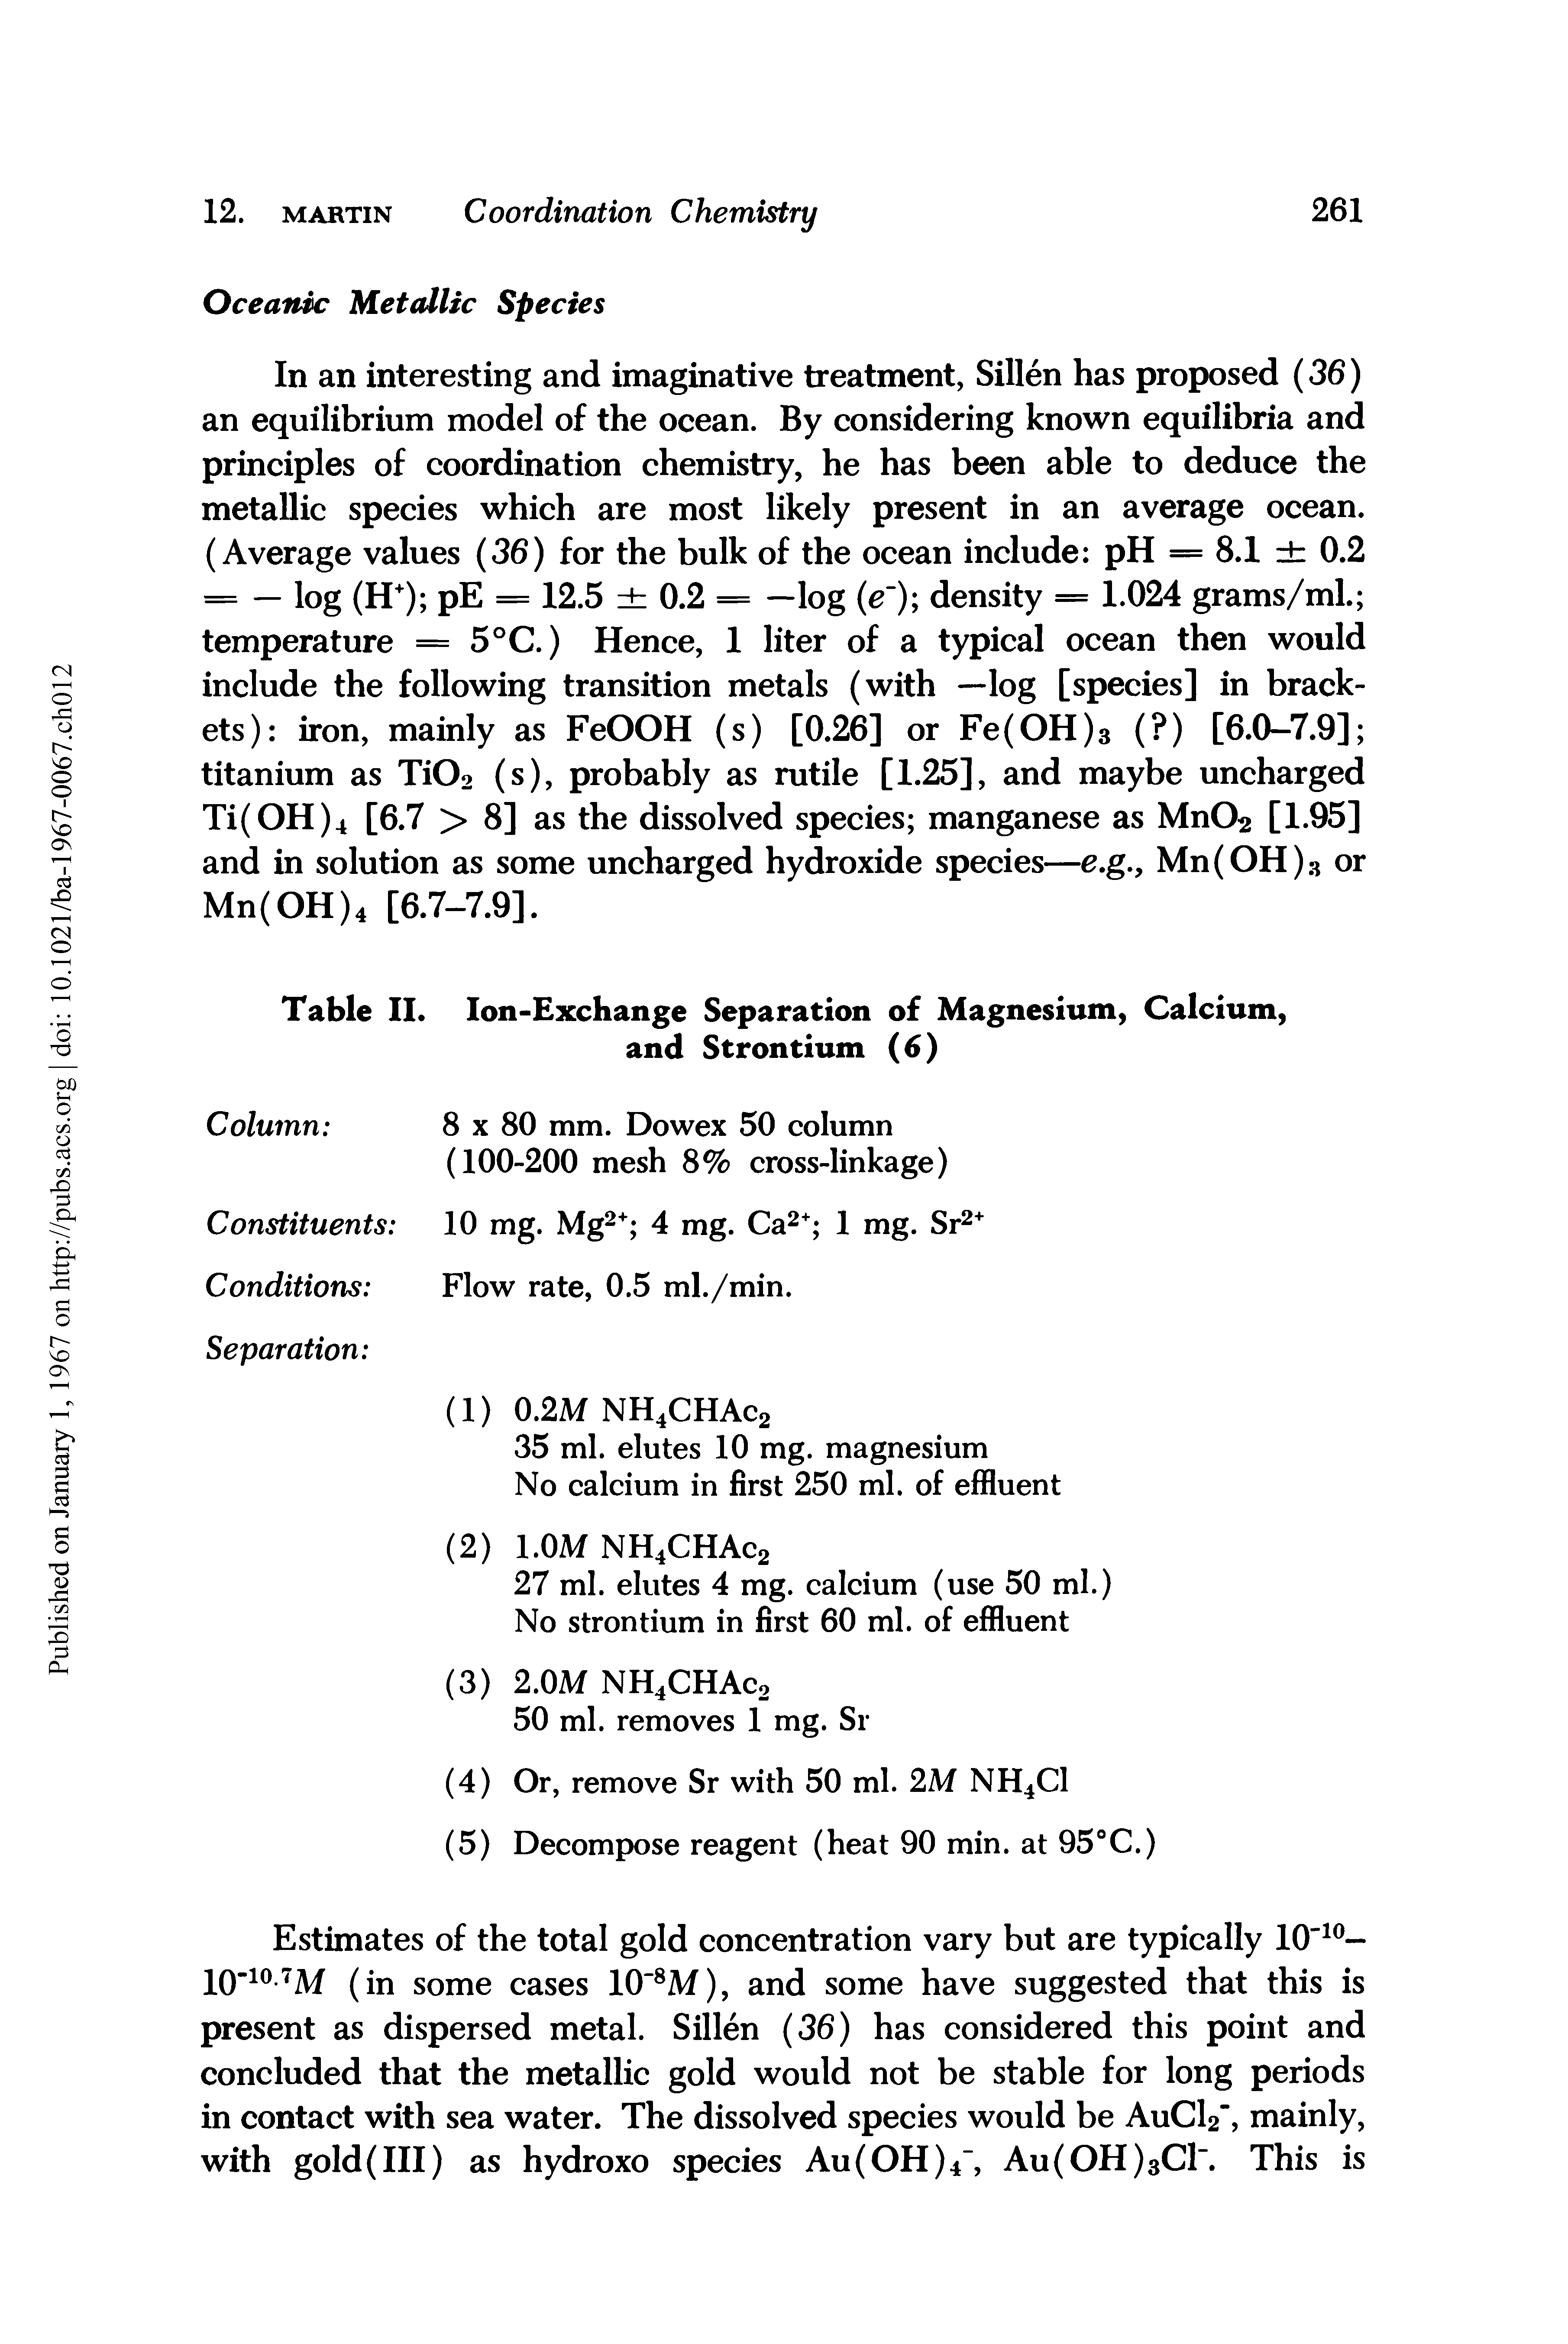 Table II. Ion-Exchange Separation of Magnesium, Calcium, and Strontium (6)...